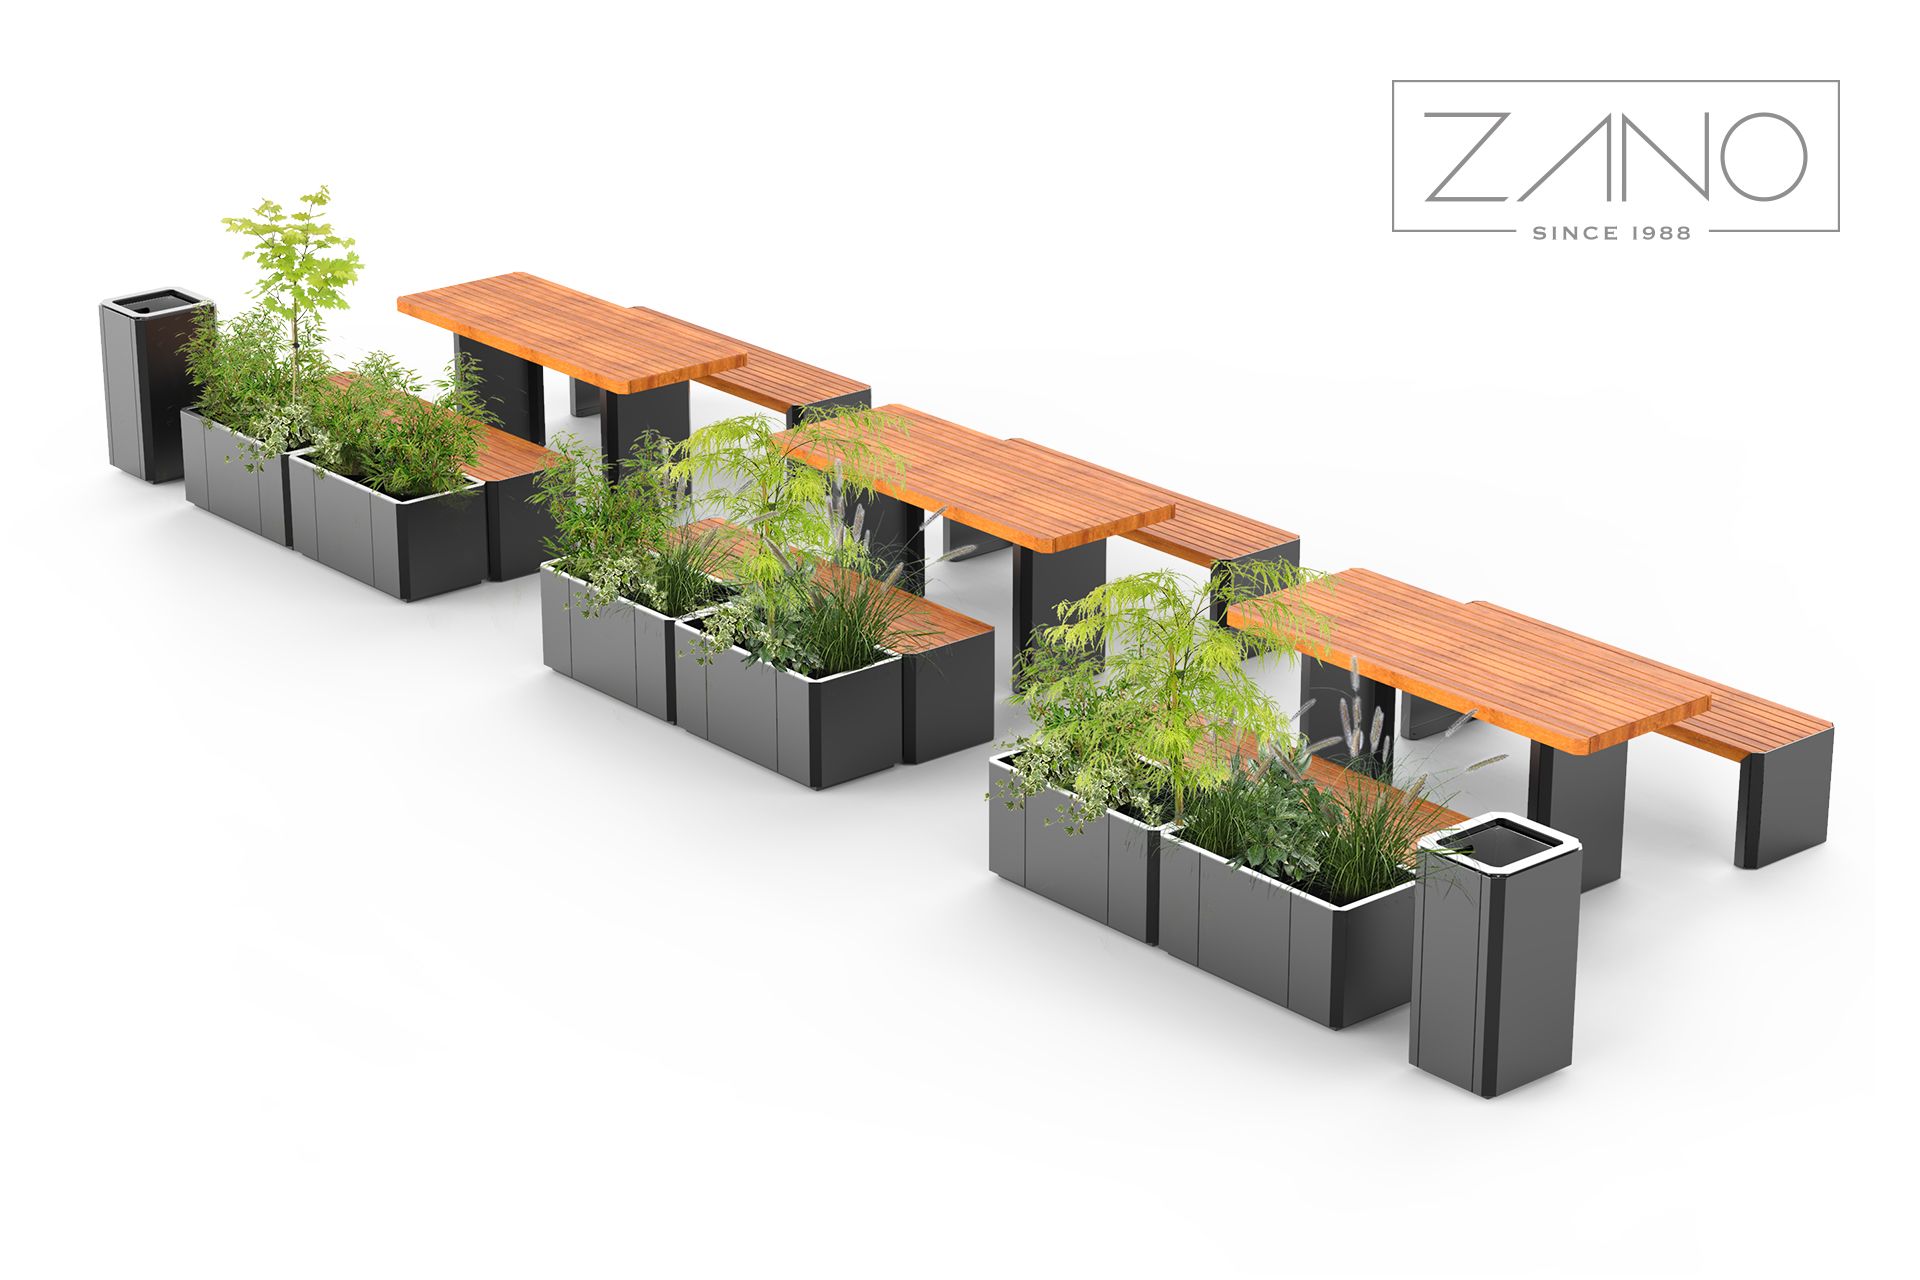 Stilo - penkit ja istutusastiat ZANO Urban Furniture -yhtiöltä